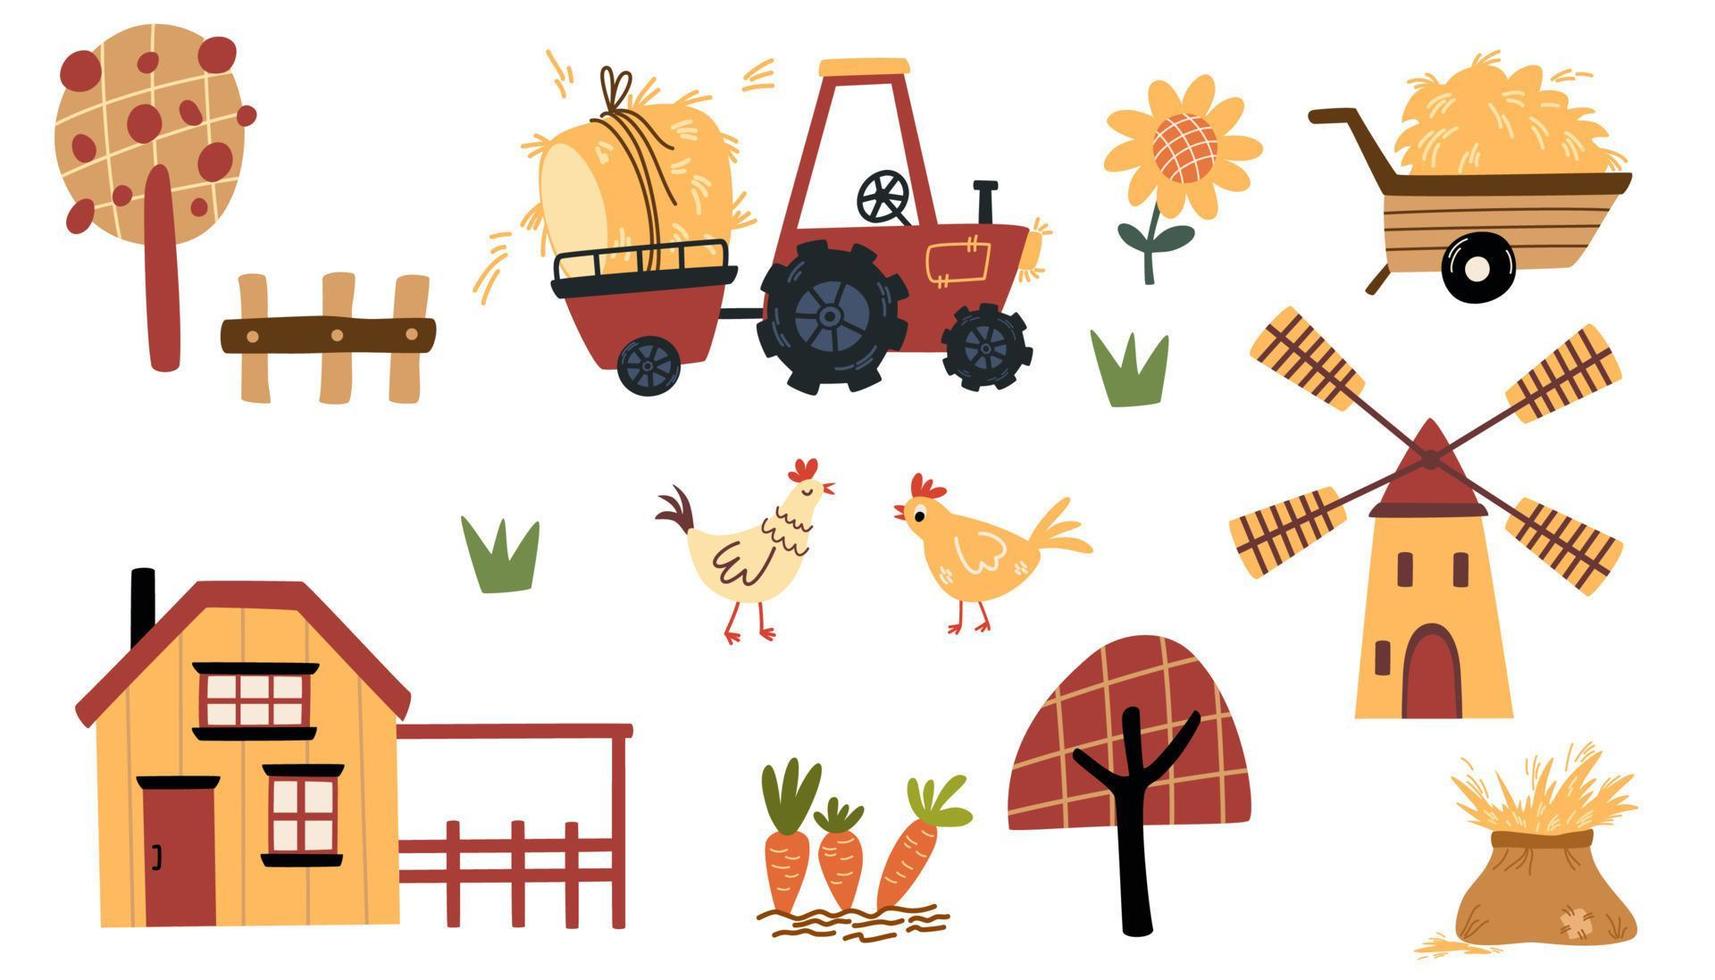 granja colocar. rural casas, molino, tractor con heno, pollos, arboles y cultivos. agricultura recopilación, rural elementos. vector dibujos animados ilustración aislado en el blanco antecedentes.